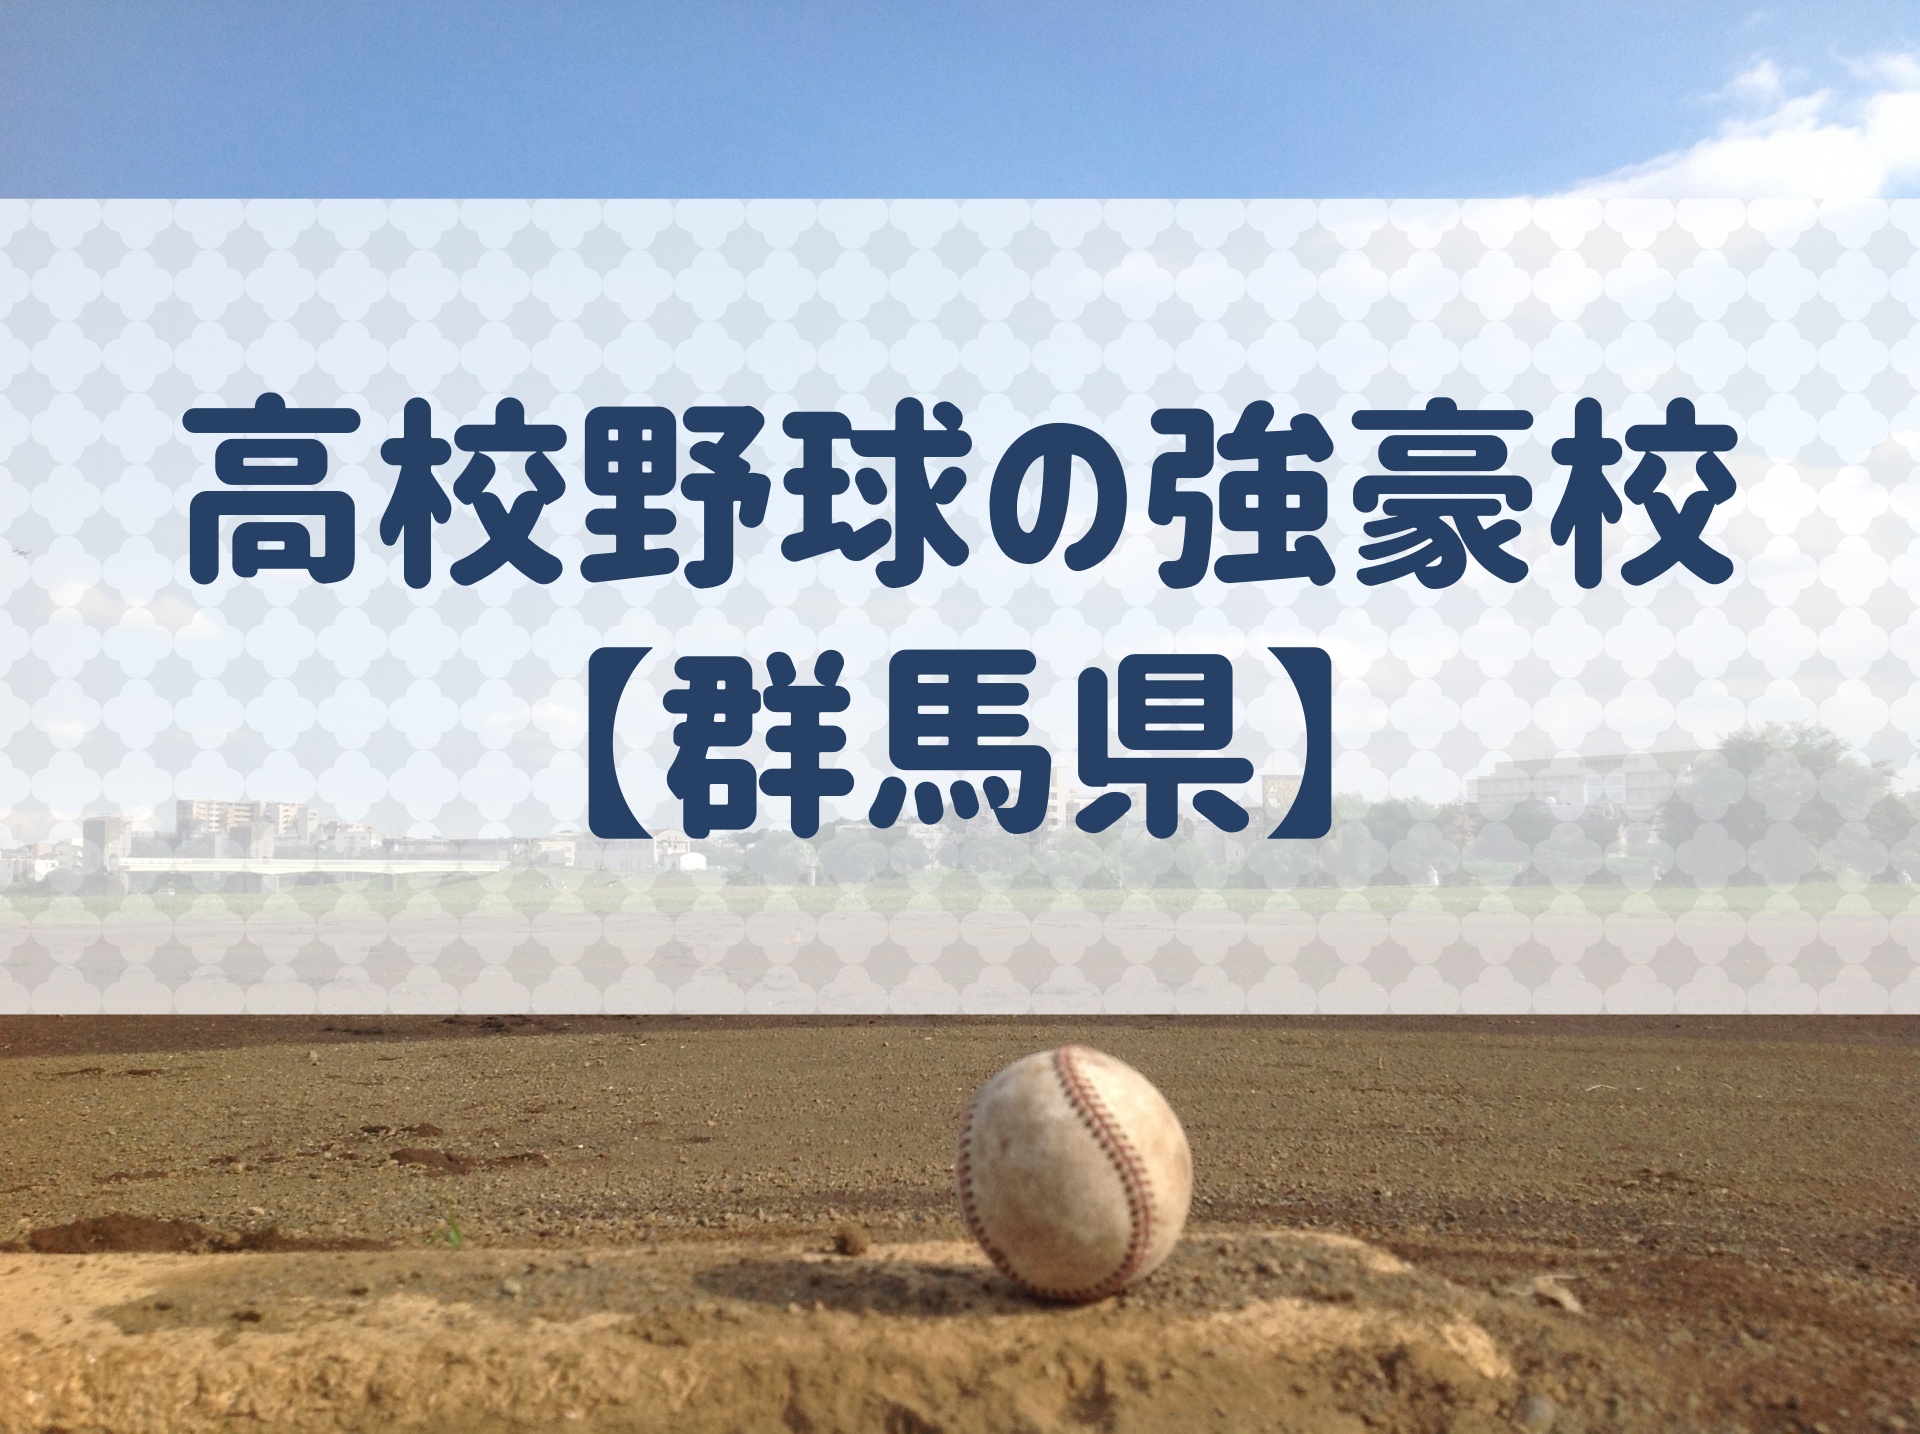 群馬県 高校野球の強豪校 特徴と実績などを紹介 野球用語 Net